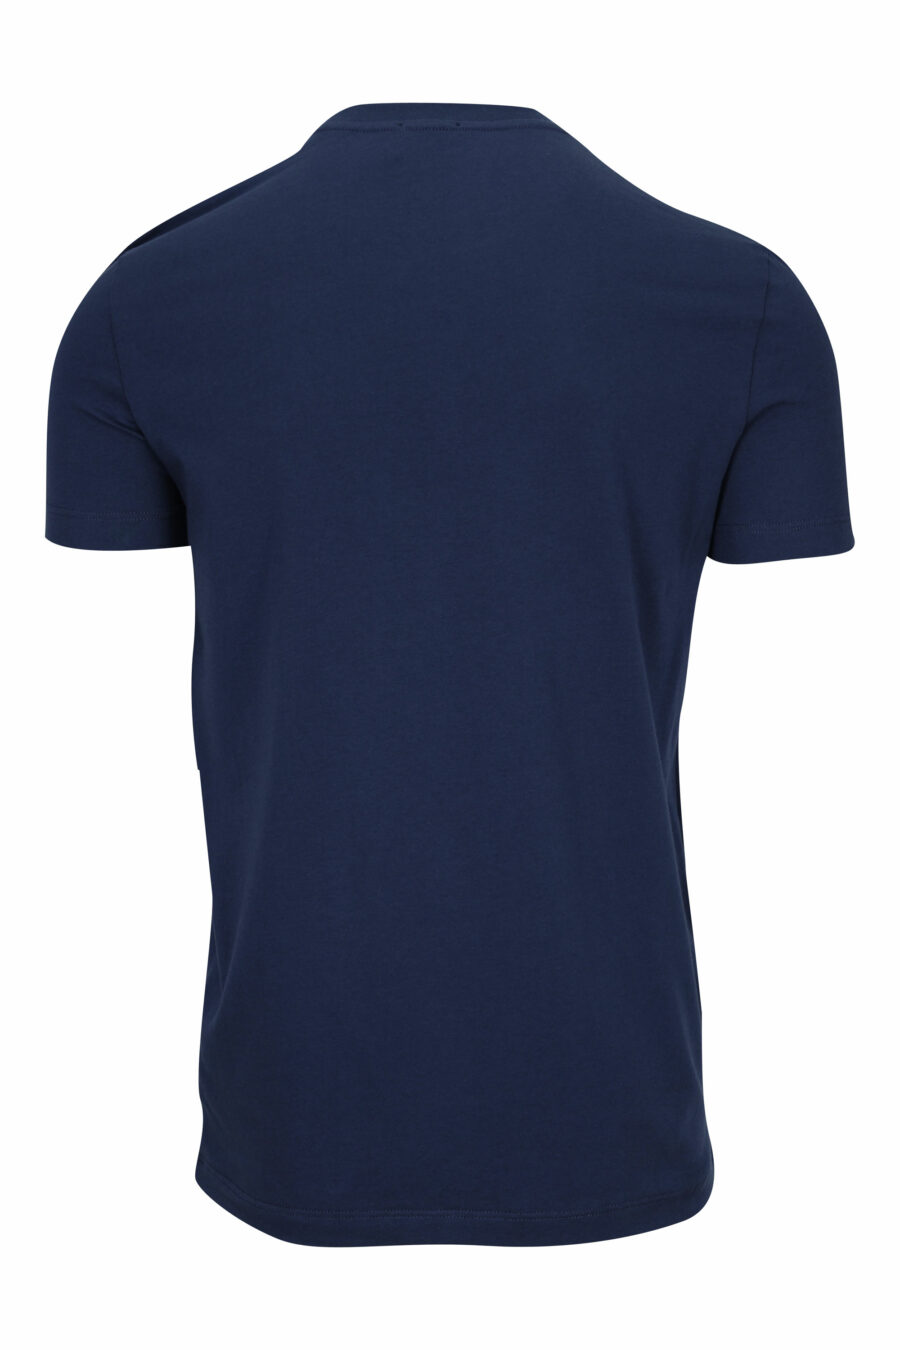 T-shirt azul escura com roupa interior branca minilogue - 8032674811684 1